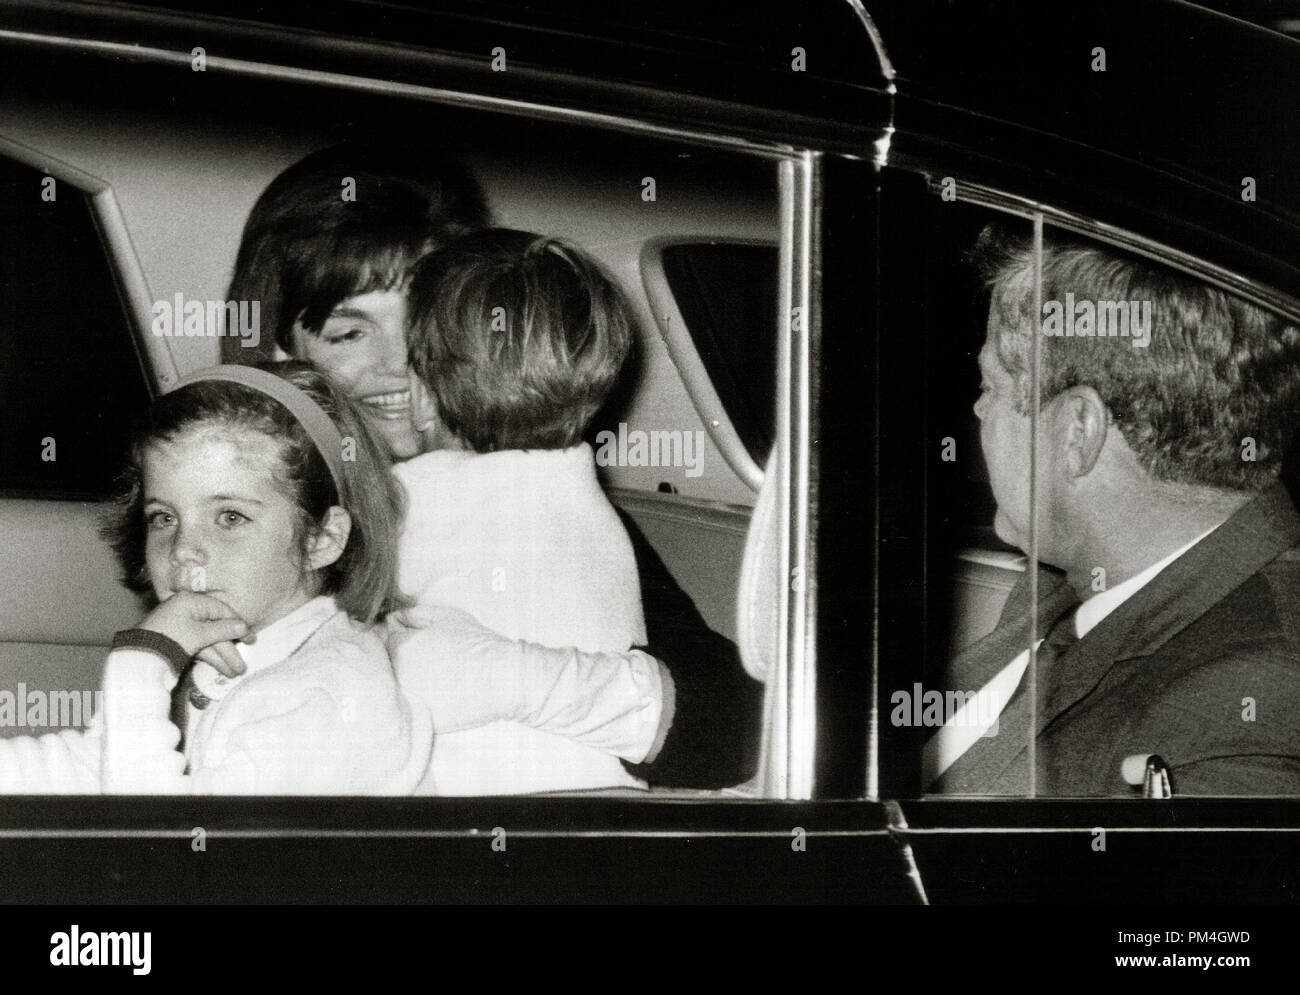 Première Dame Jacqueline Bouvier Kennedy est accueilli par ses enfants après l'arrivée d'un voyage le 17 octobre 1963. (Photo NARA) Référence du dossier #  1003 120THA Banque D'Images